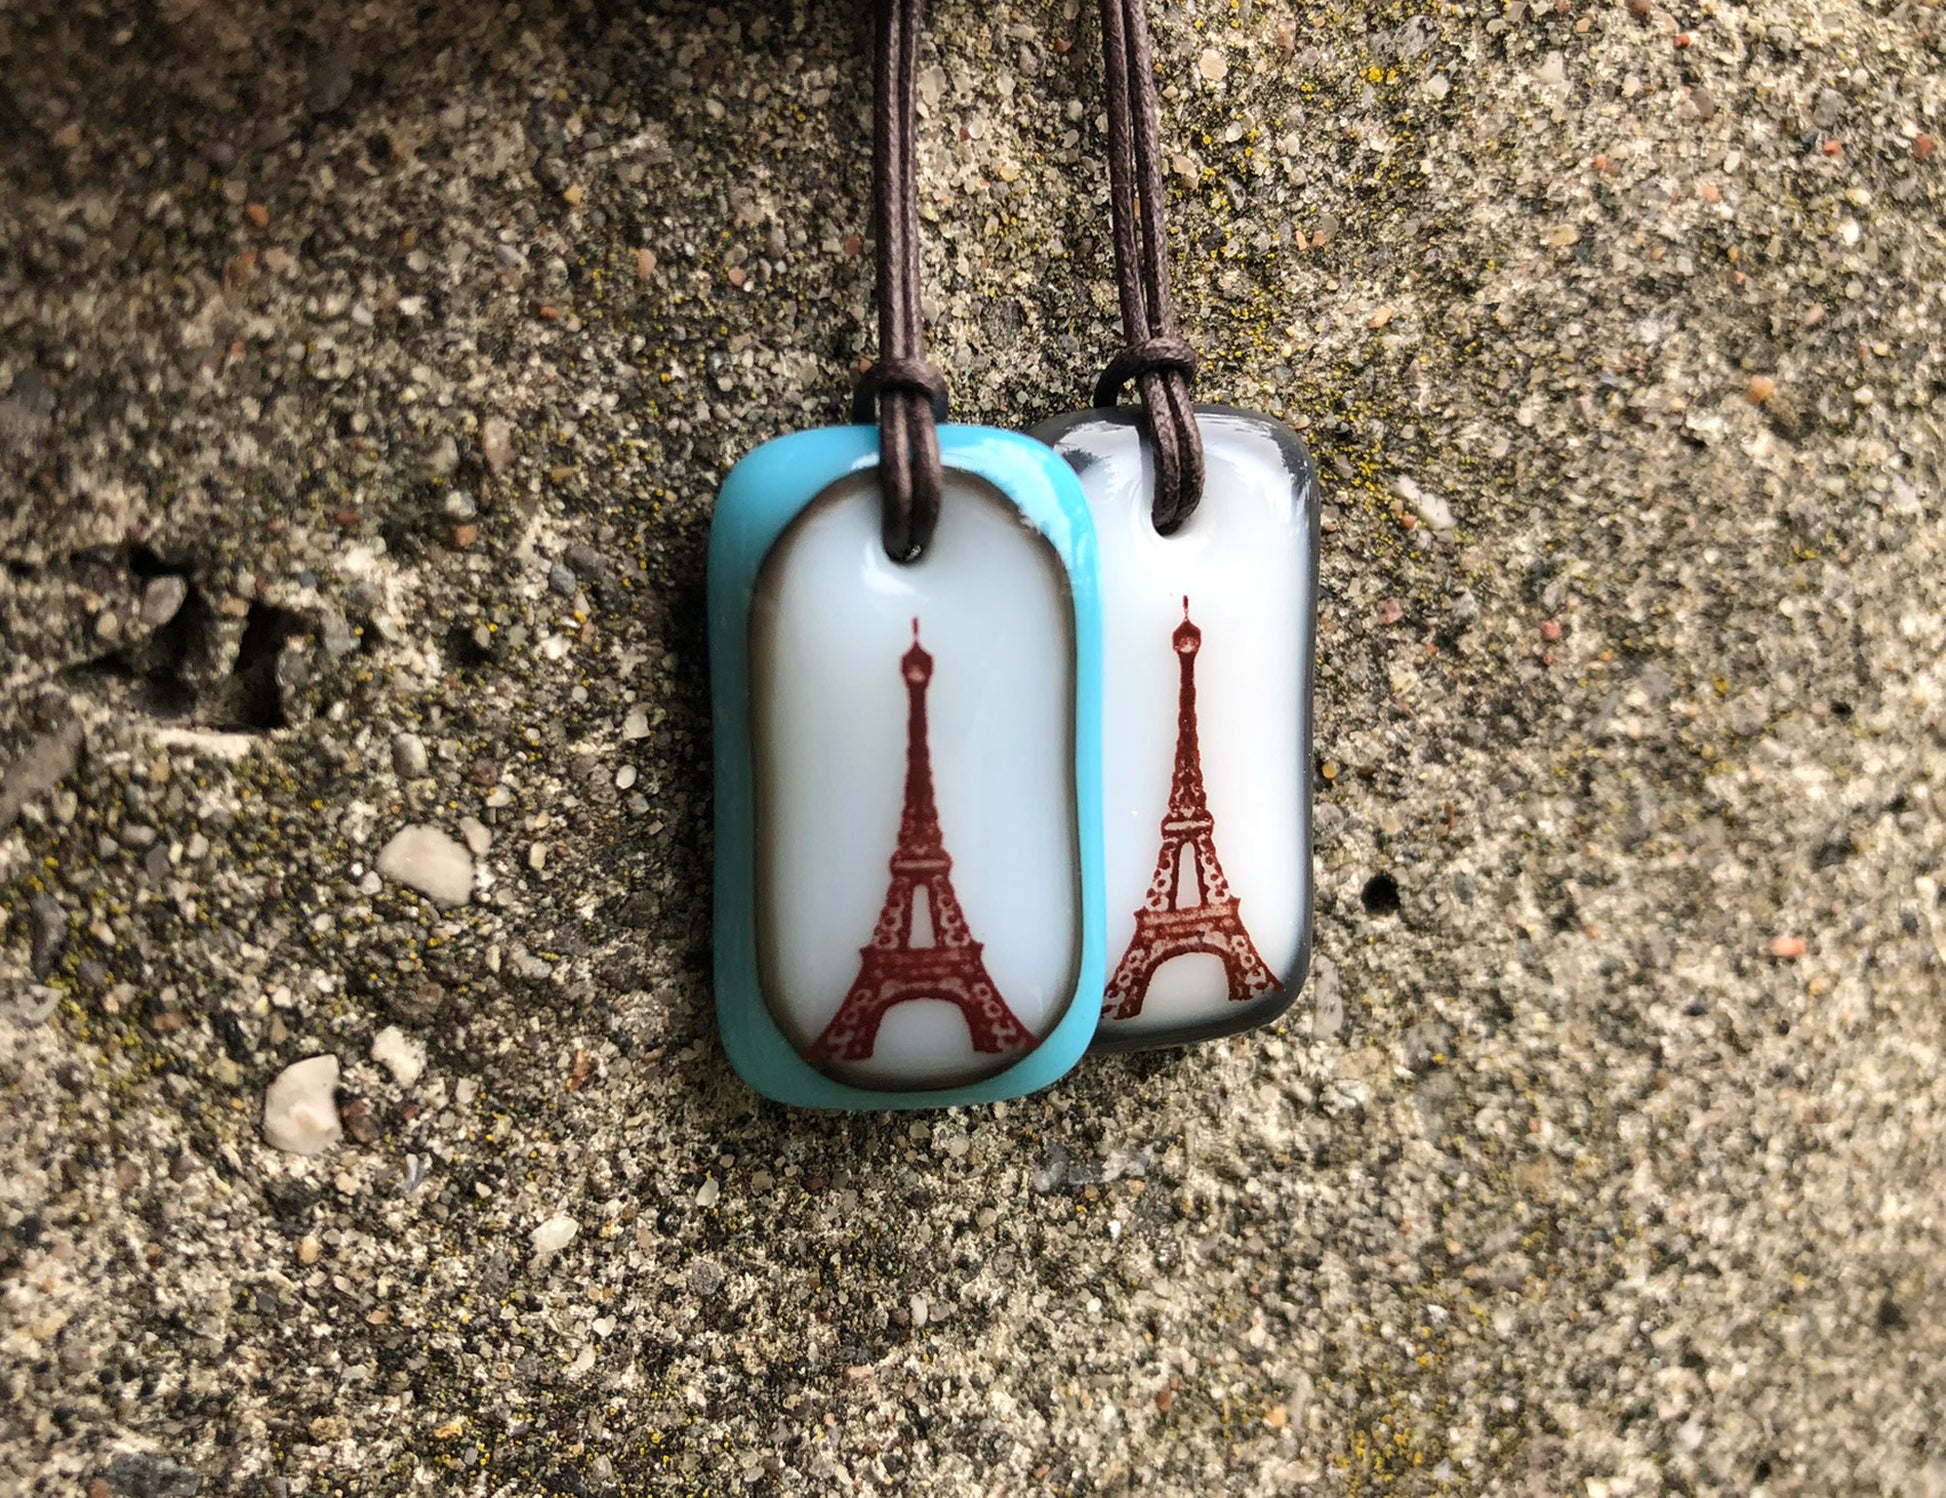 2 inch Eiffel Tower Key Chain Charms